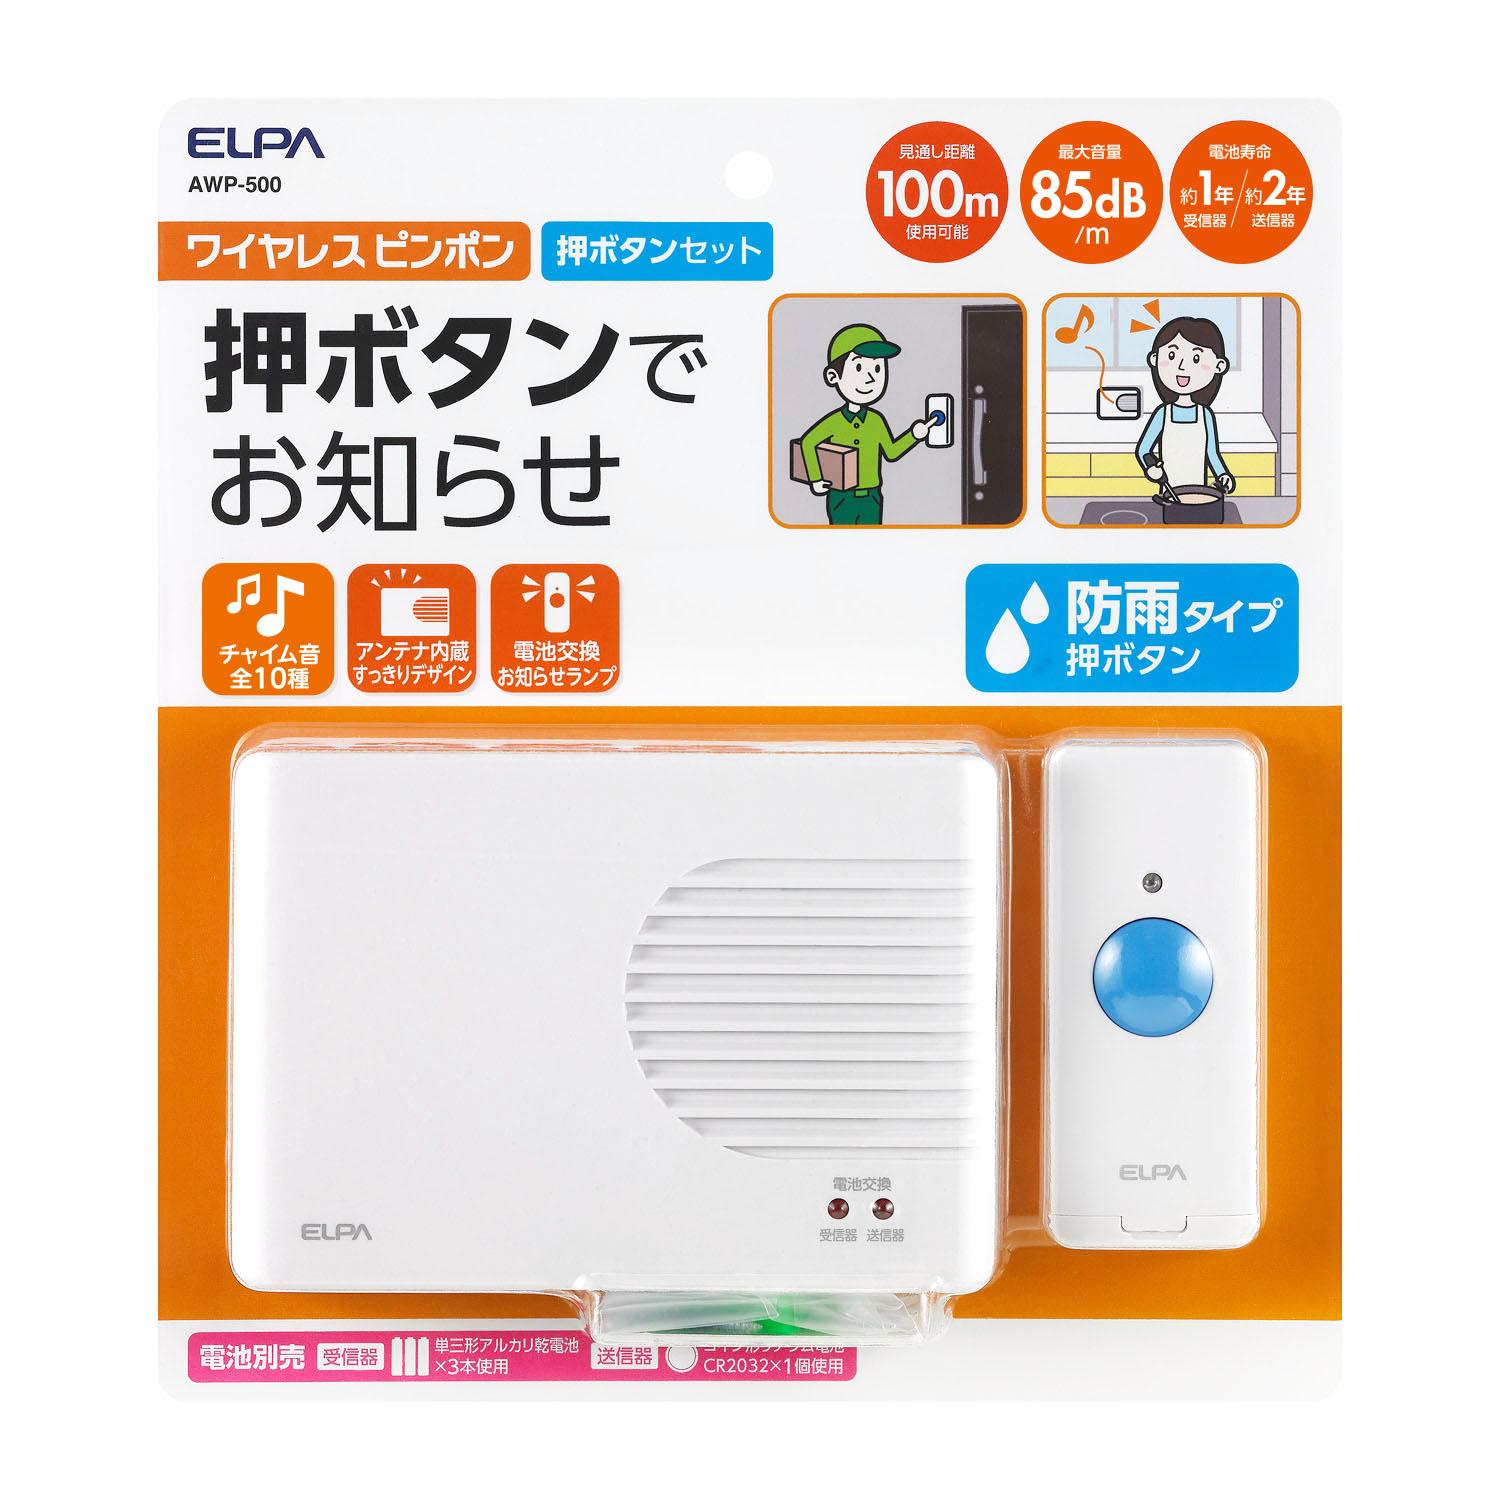 【送料無料】ELPA(エルパ) ワイヤレスピンポン 押ボタンセット AWP-500 1